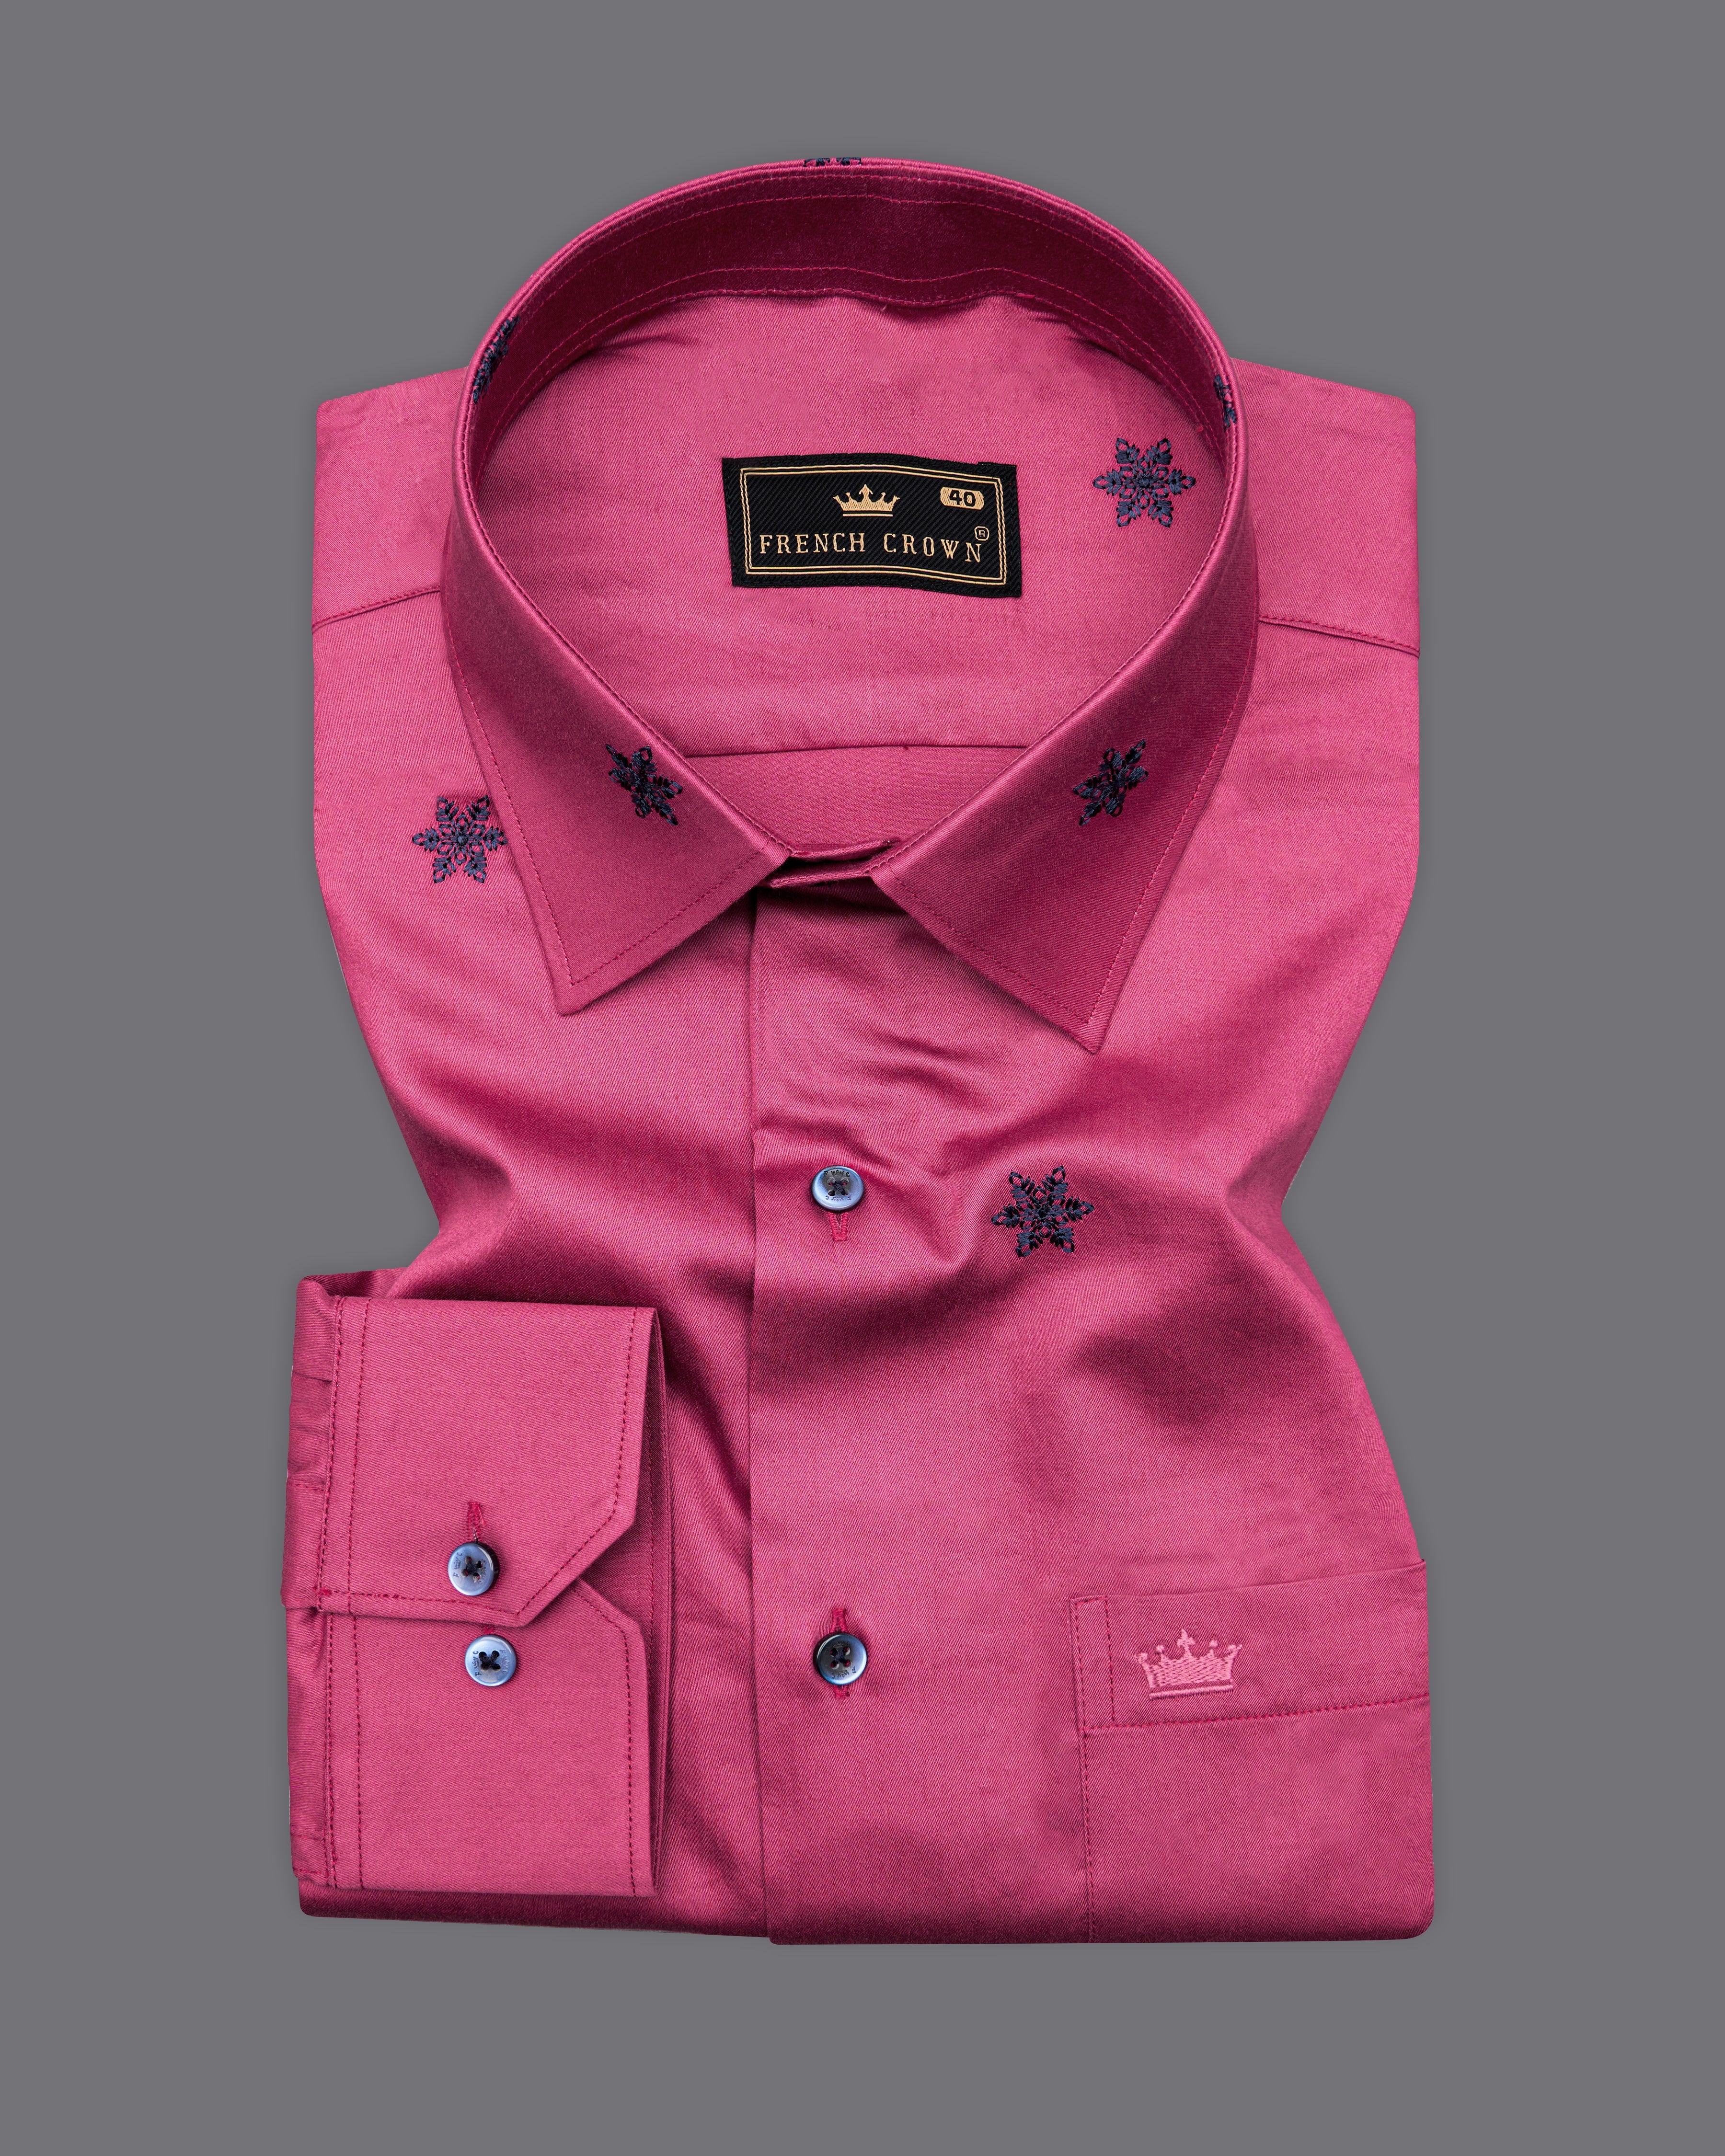 Cabaret Pink with Black Embroidered Super Soft Premium Cotton Shirt 9857-BLK-38, 9857-BLK-H-38, 9857-BLK-39, 9857-BLK-H-39, 9857-BLK-40, 9857-BLK-H-40, 9857-BLK-42, 9857-BLK-H-42, 9857-BLK-44, 9857-BLK-H-44, 9857-BLK-46, 9857-BLK-H-46, 9857-BLK-48, 9857-BLK-H-48, 9857-BLK-50, 9857-BLK-H-50, 9857-BLK-52, 9857-BLK-H-52